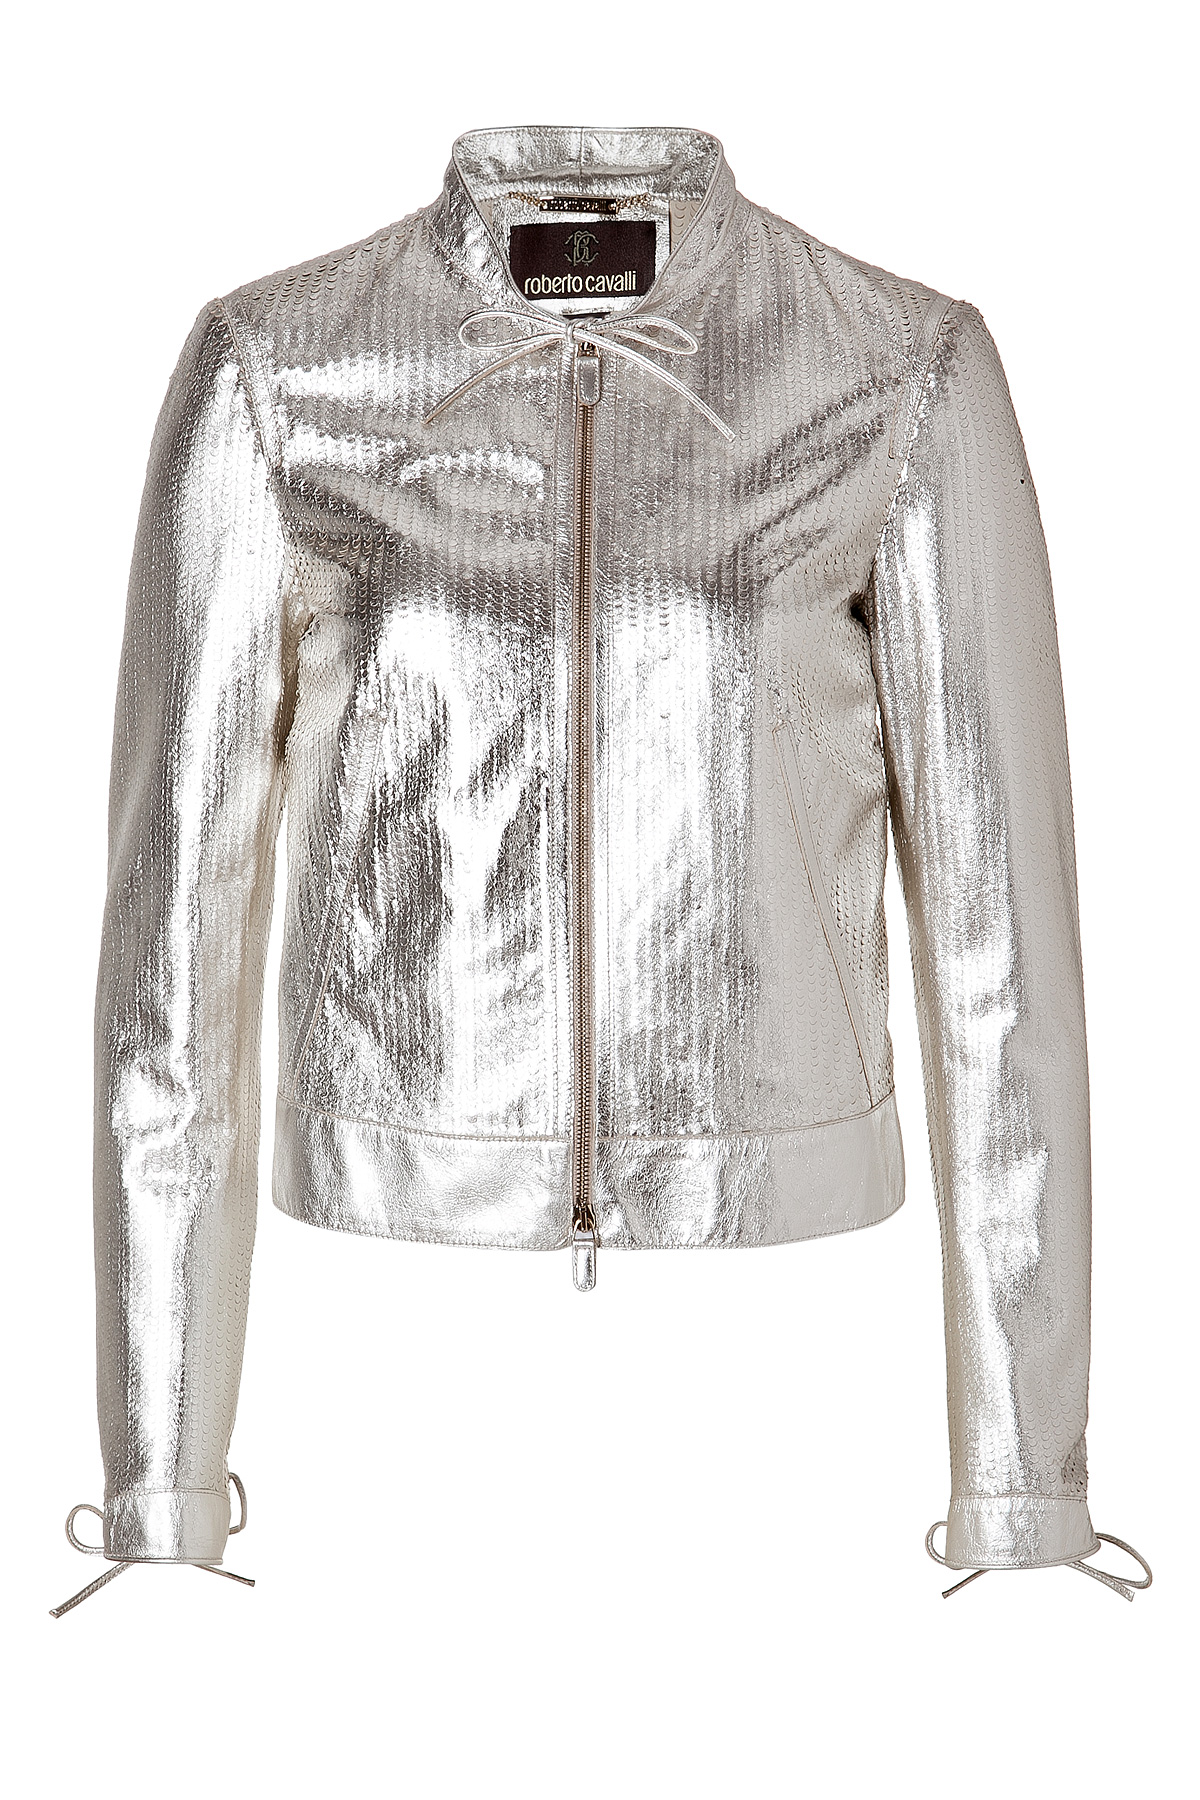 Lyst - Roberto cavalli Metallic Leather Jacket in Metallic